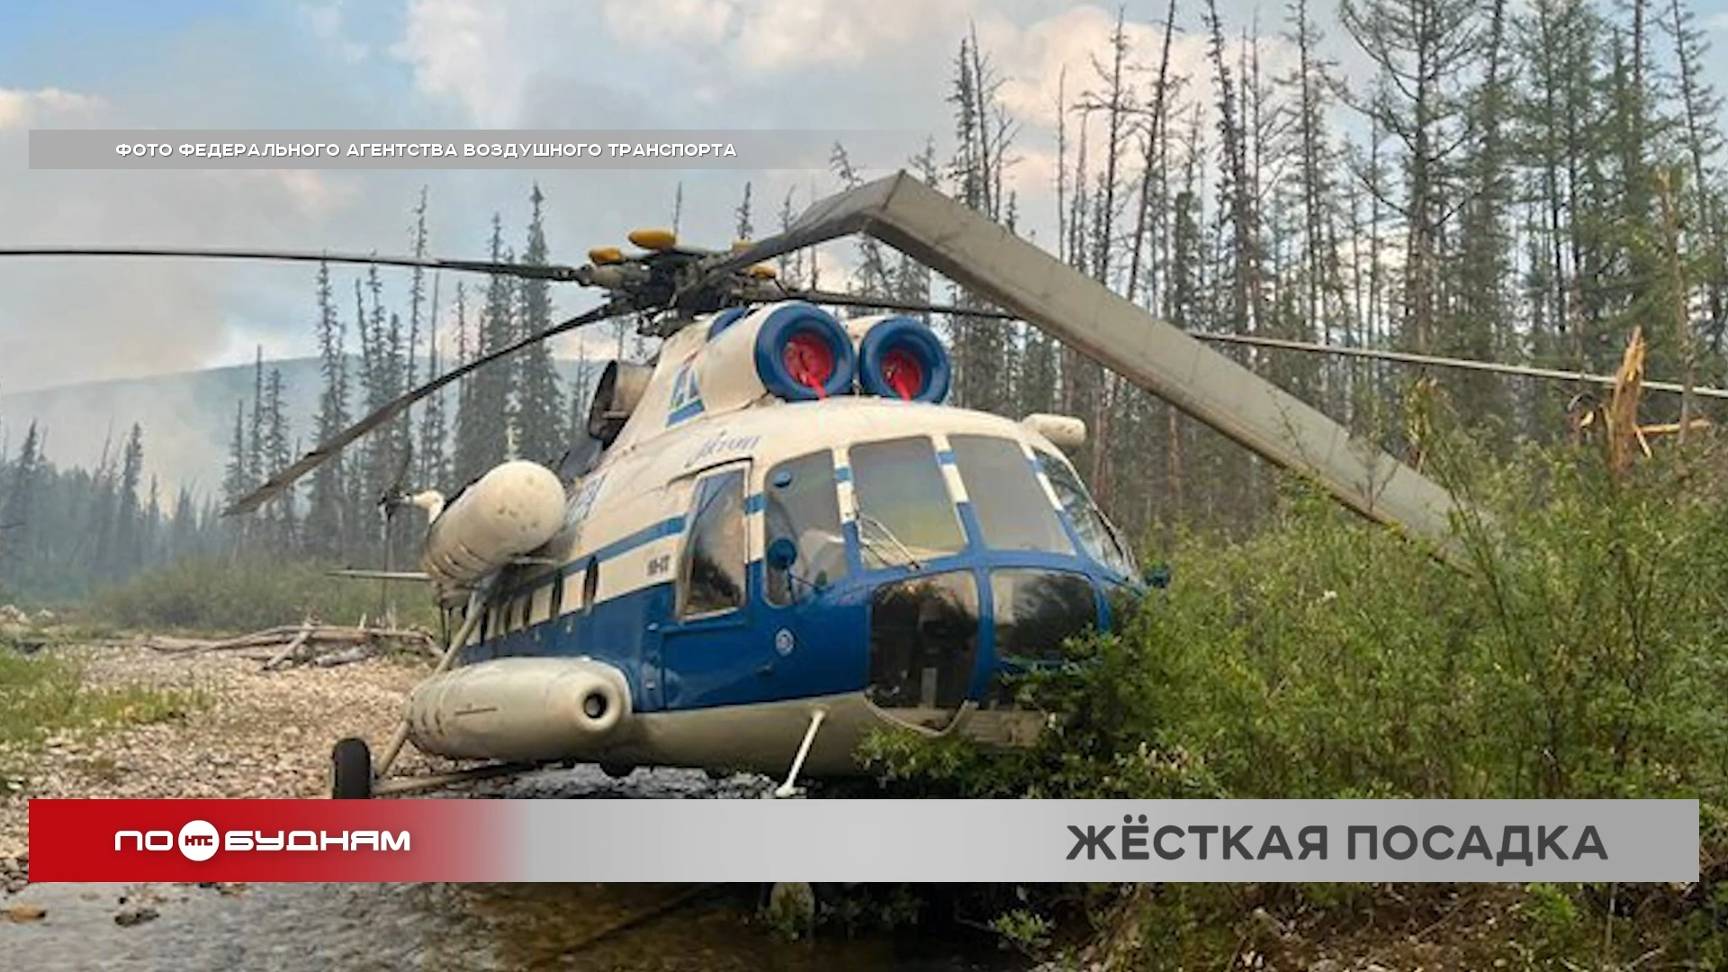 Две лопасти винта повредил вертолёт при посадке в лесу в Бодайбинском районе